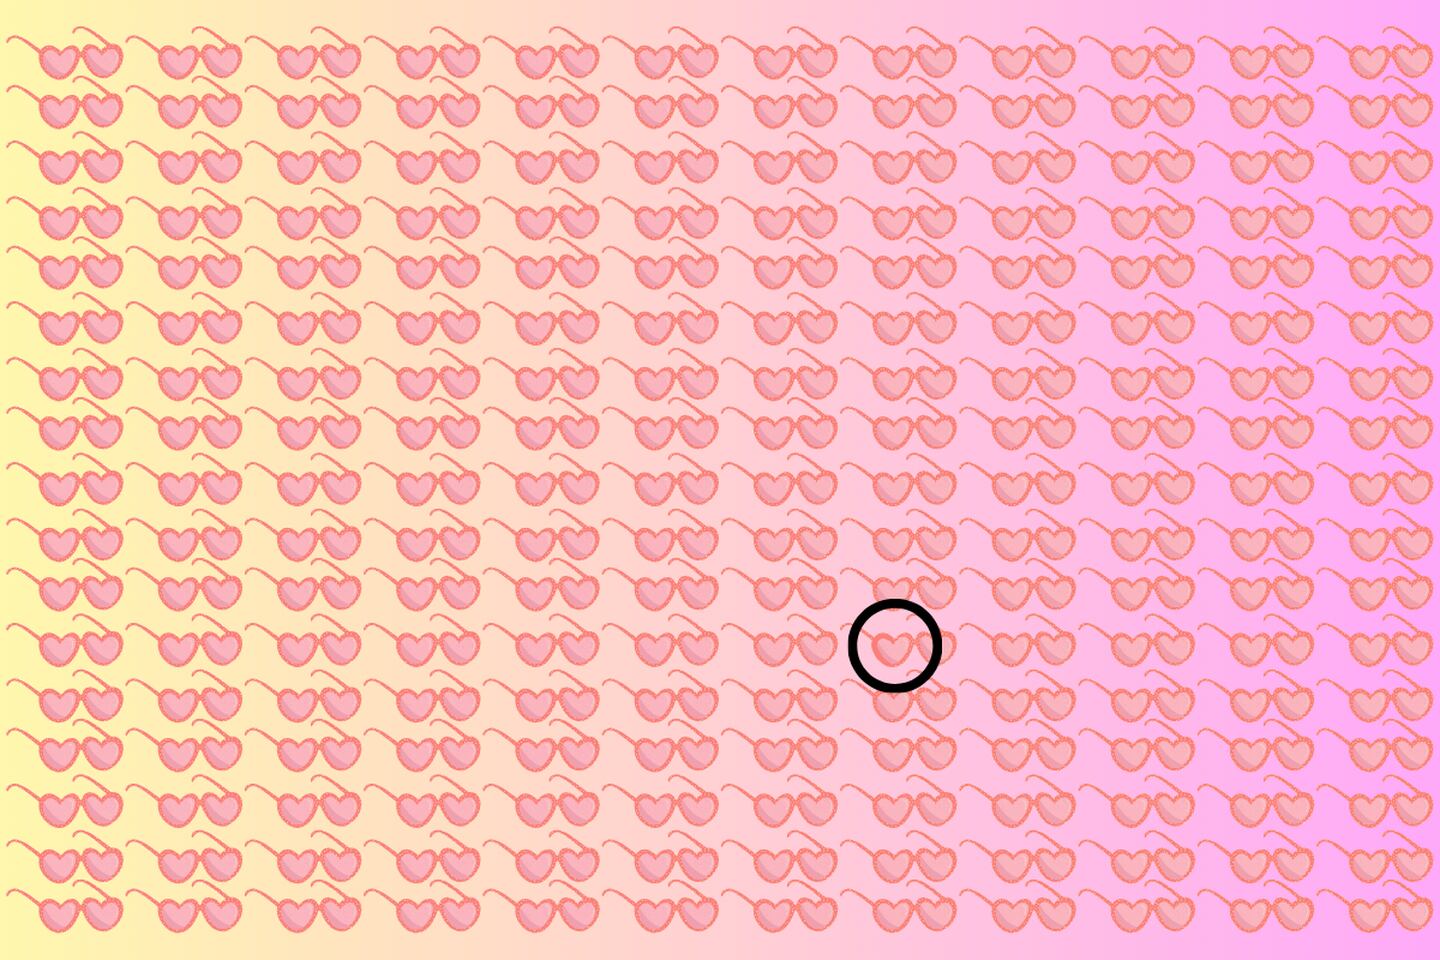 Muchos lentes con forma de corazón, y solo uno es diferente, y está señalado con un círculo negro.